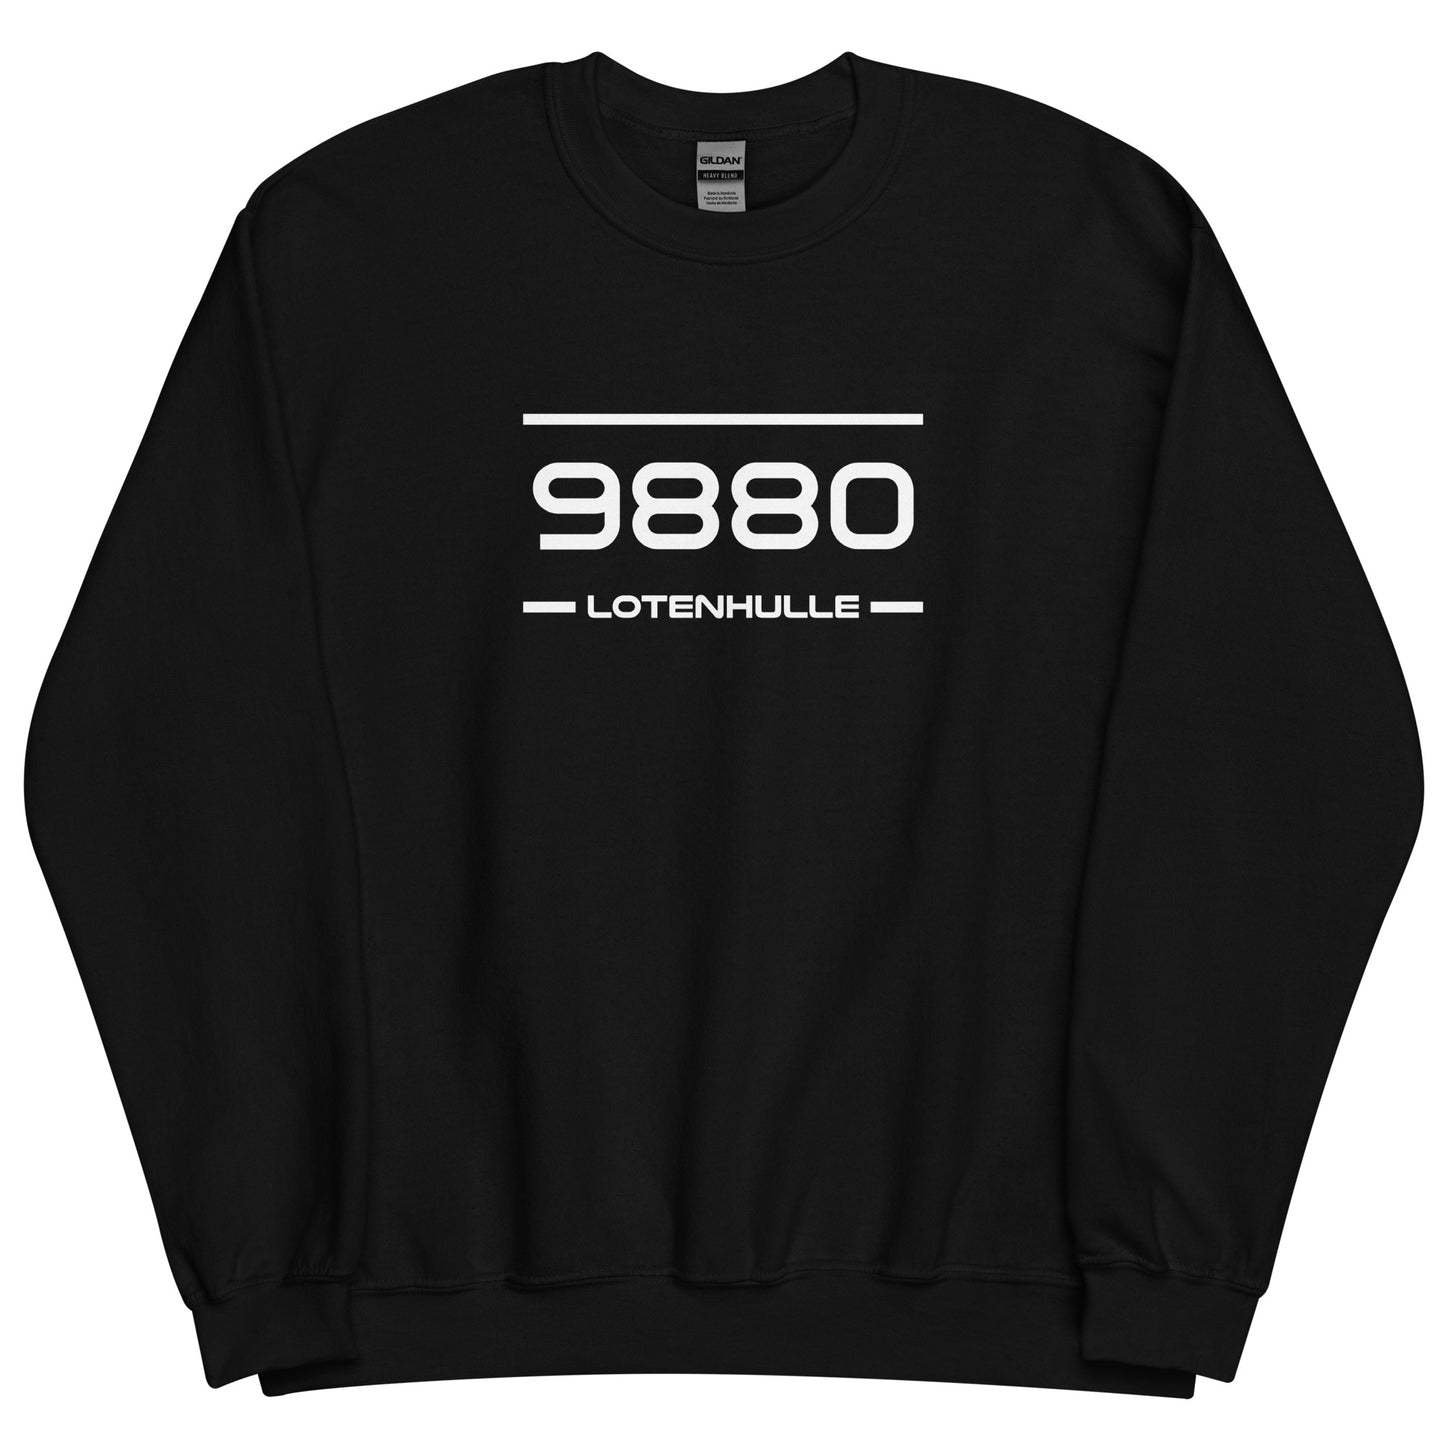 Sweater - 9880 - Lotenhulle (M/V)